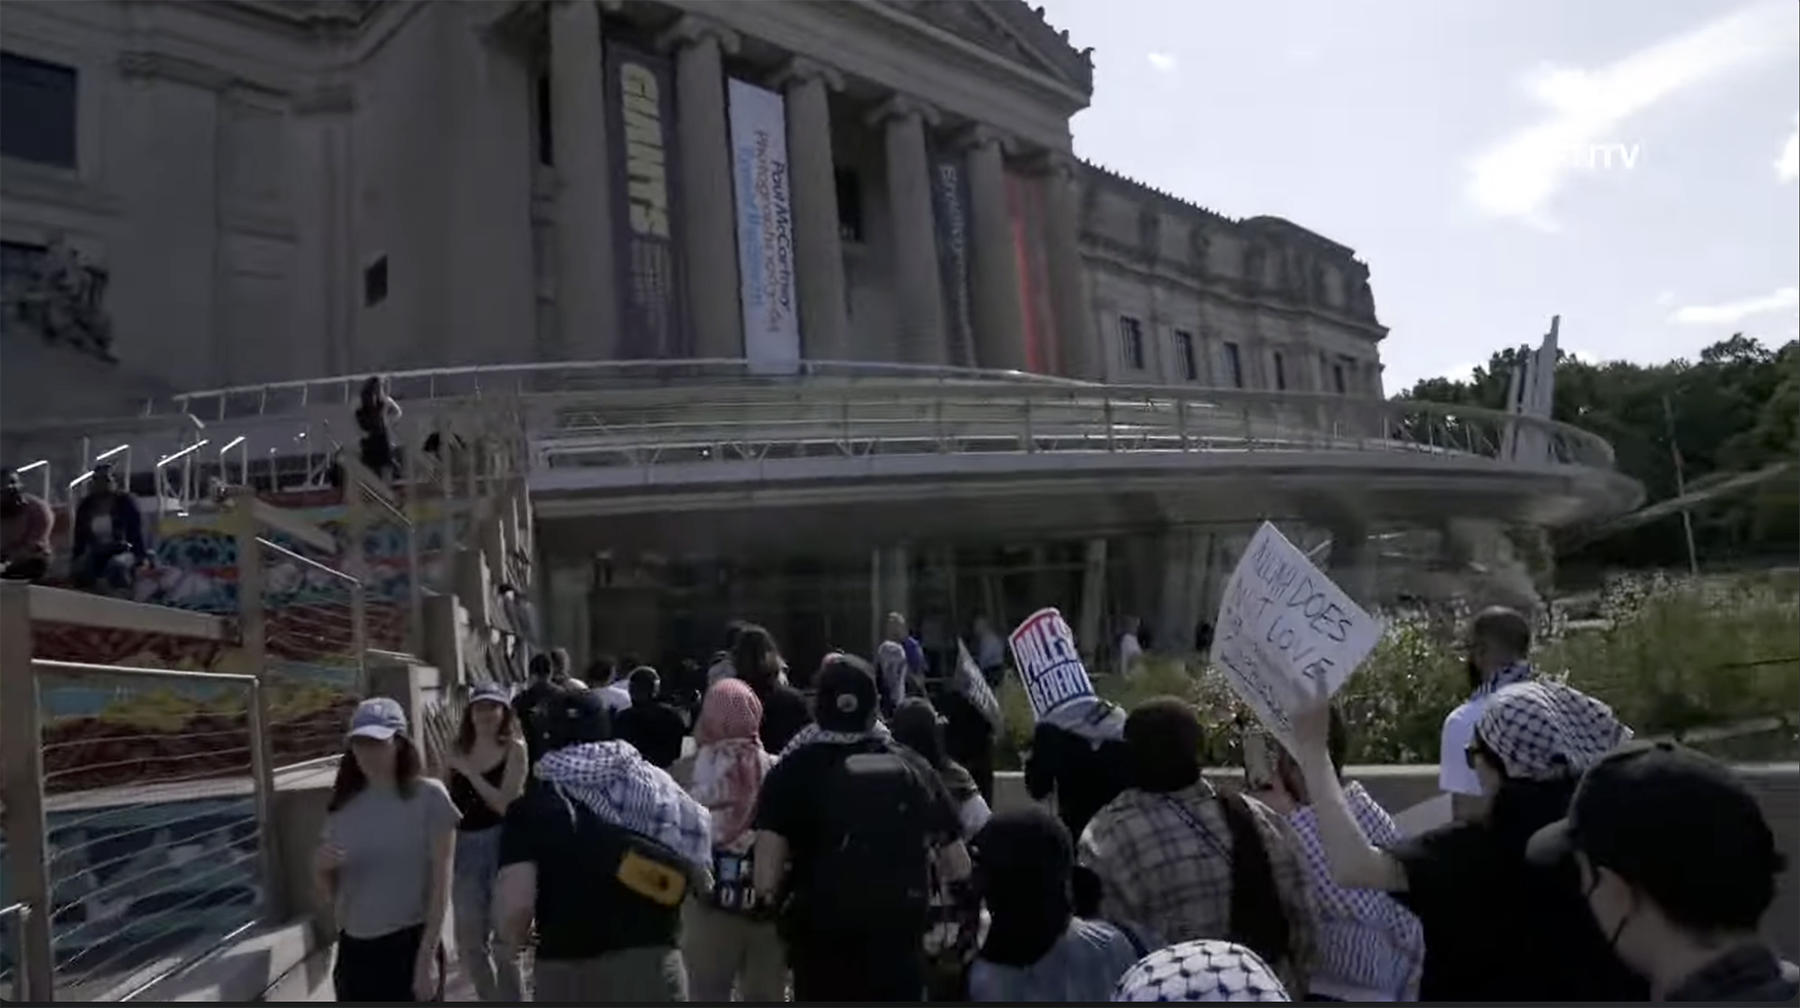 親巴勒斯坦抗議者5月31日湧入布魯克林博物館，一度闖入館內佔領大廳等區域。圖/翻攝自FREEDOMNEWS TV - NATIONAL / SCOOTERCASTER YouTube頻道